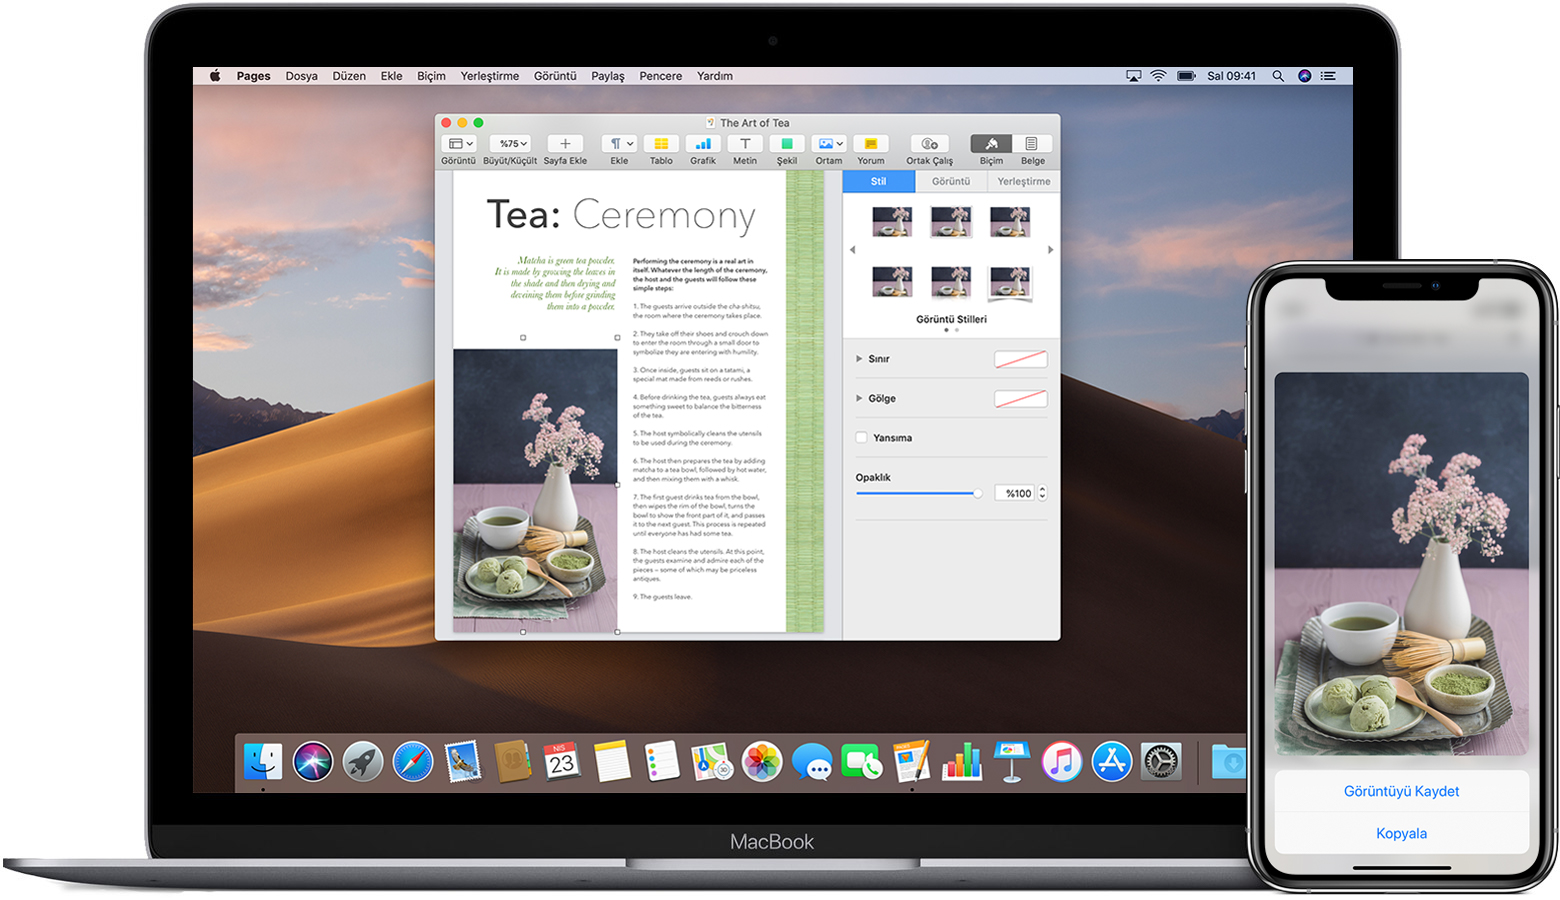 Kopyala seçeneğinin görüntülendiği bir iPhone resmi ve açık durumdaki bir Pages belgesinde aynı resmin görüntülendiği MacBook.